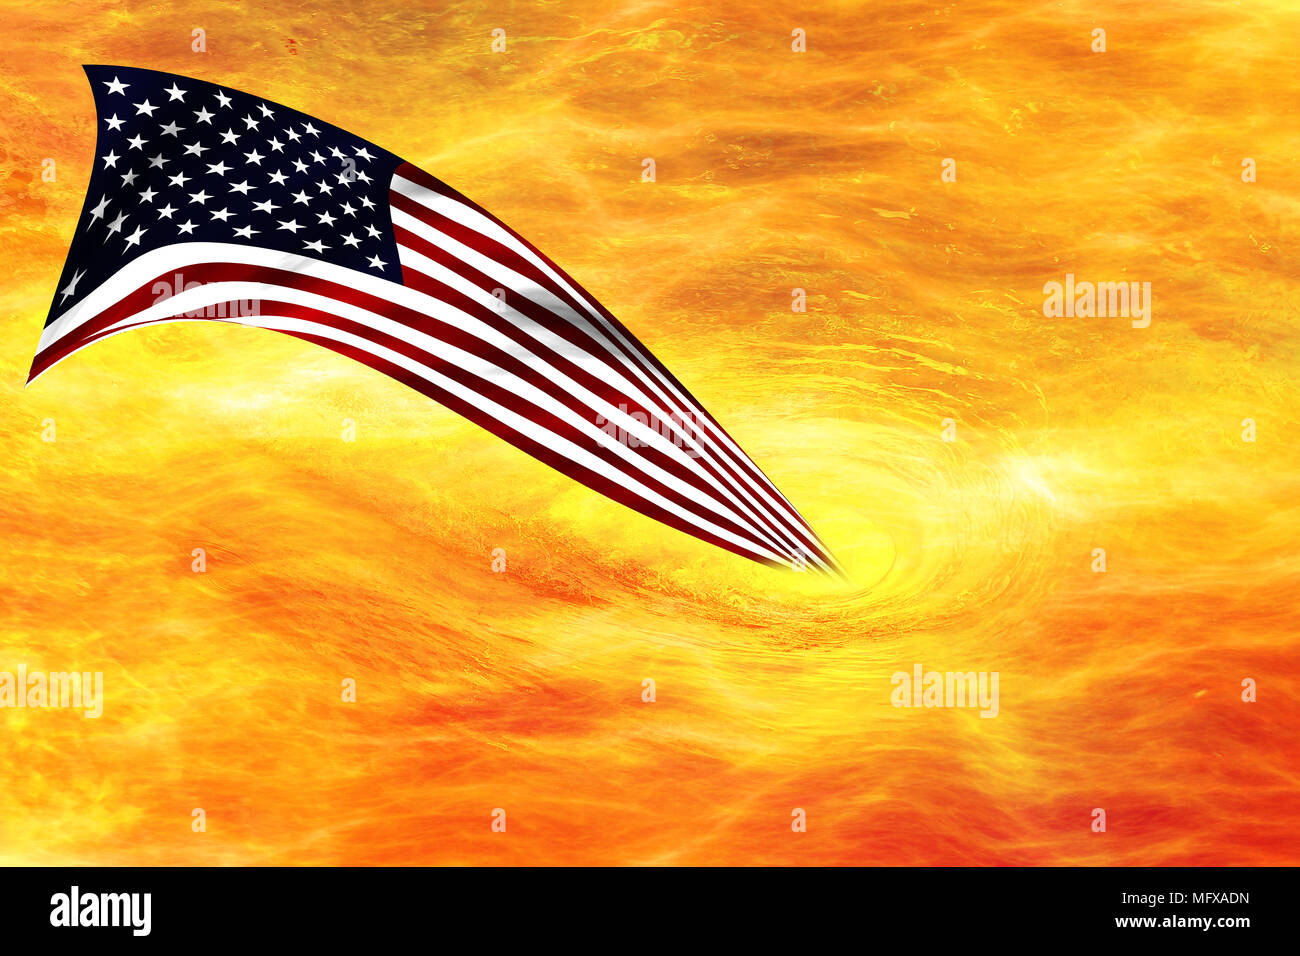 Spirale Flamme, Feuer glühenden Feuer Wirbel mit der Flagge der Vereinigten Staaten. Stockfoto